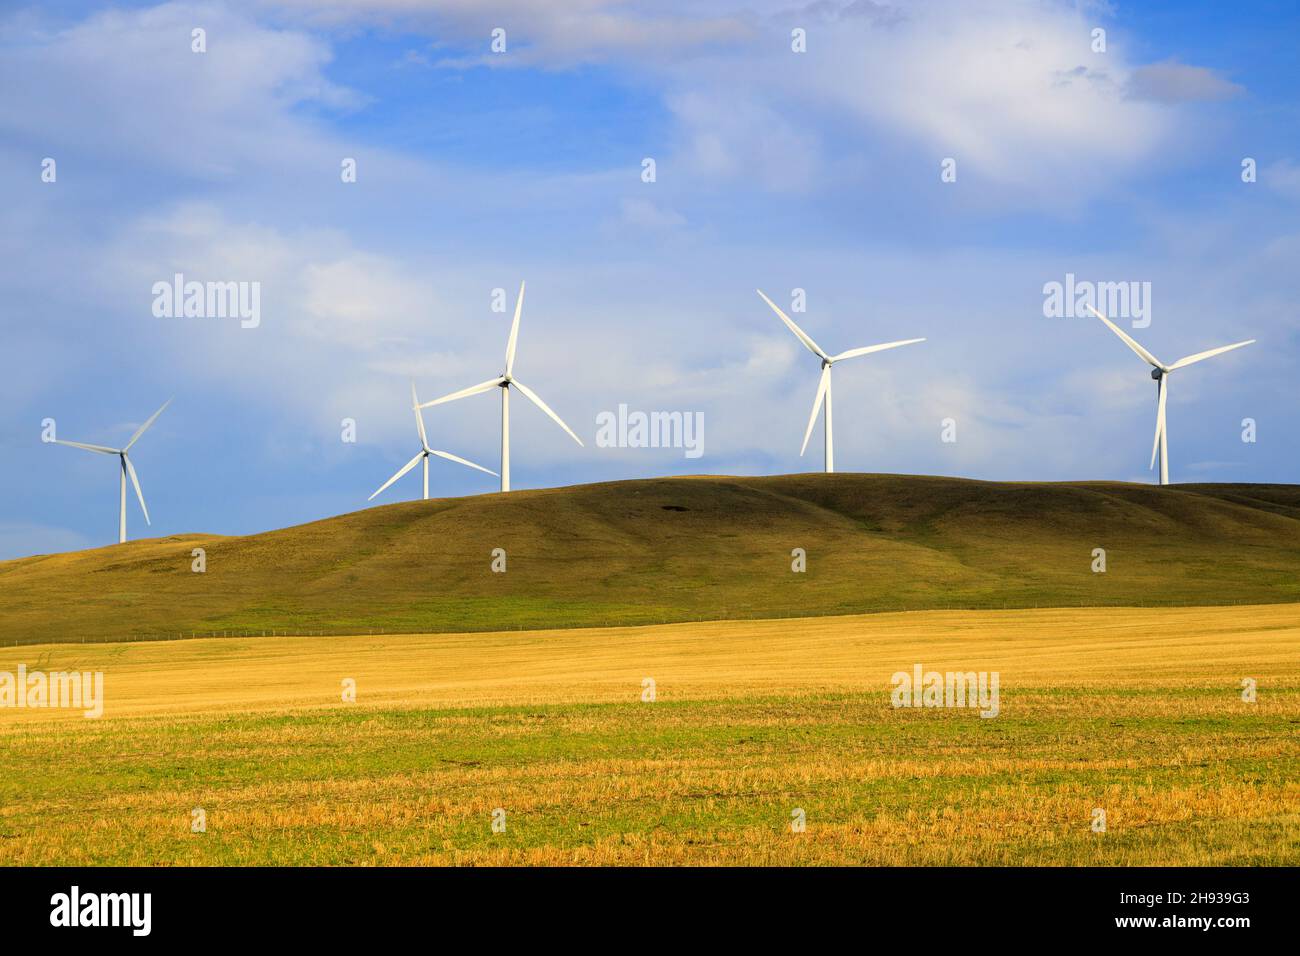 L'energia eolica o eolica è l'uso di turbine eoliche per generare elettricità. L'energia eolica è una fonte energetica popolare, sostenibile e rinnovabile. Foto Stock